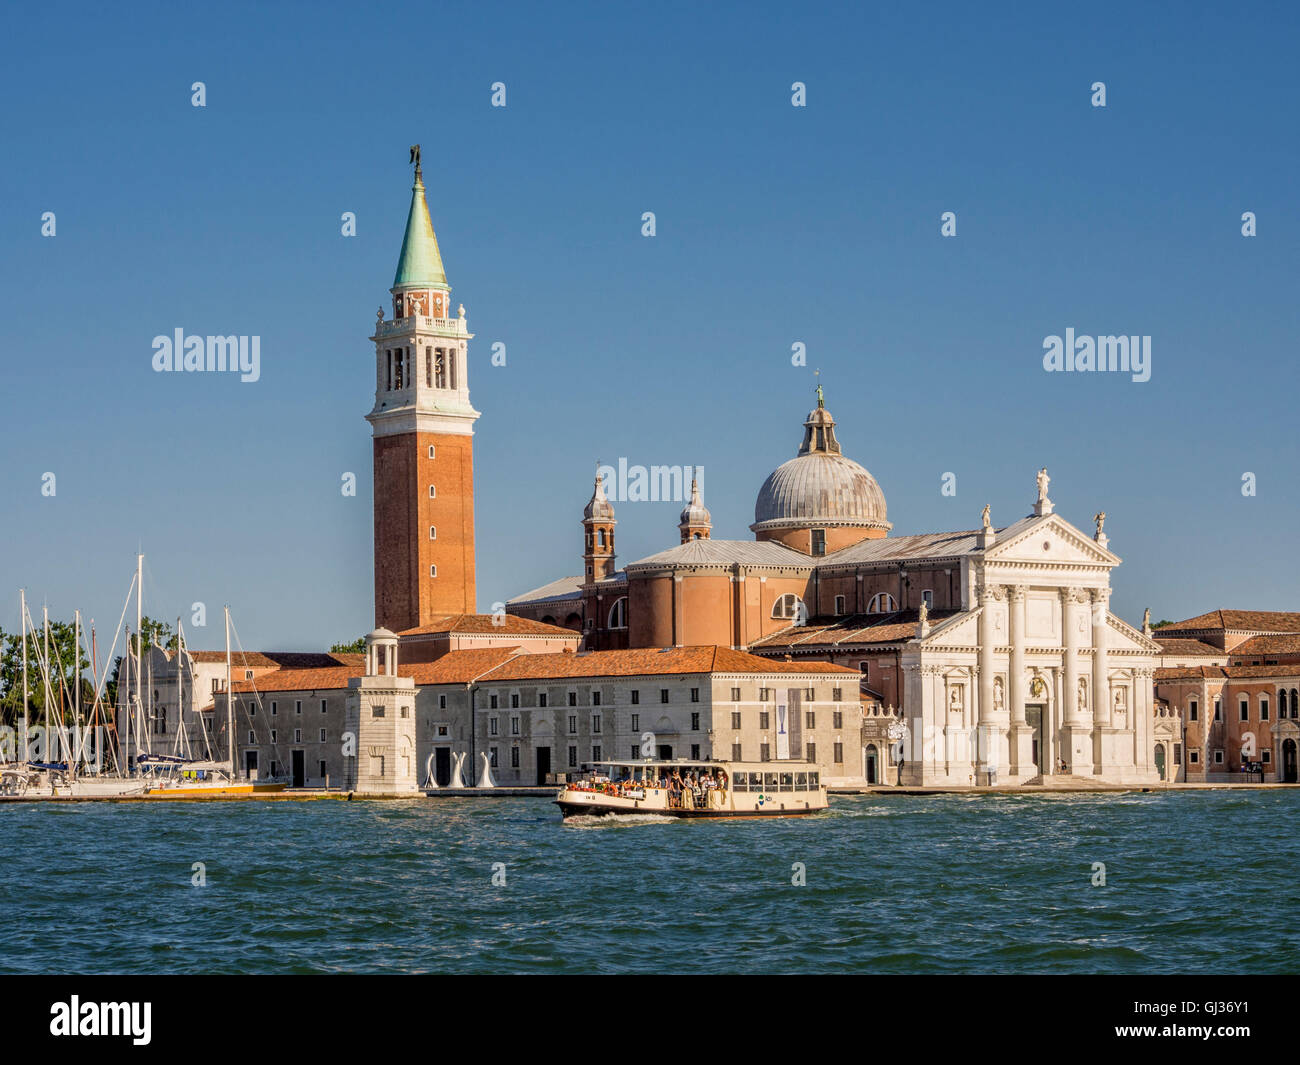 Bianco Marmo istriana la facciata della chiesa di San Giorgio Maggiore, lo stesso nome dell'isola, Venezia, Italia. Foto Stock